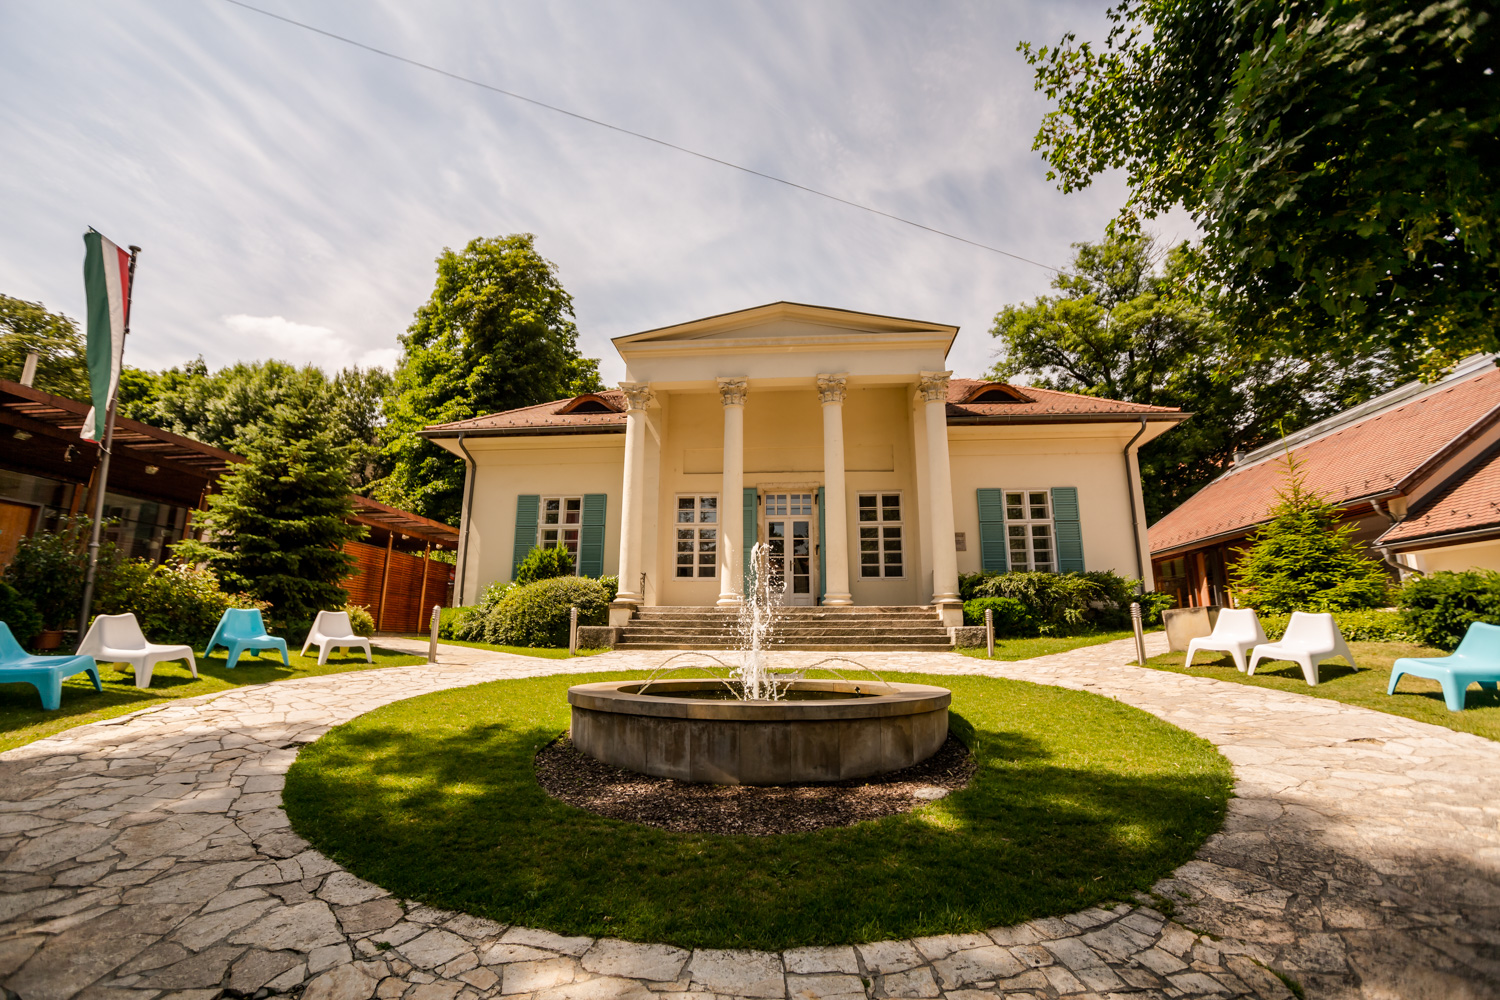 Az enyészettől megmentett műemlék – Barabás Villa a Városmajornál